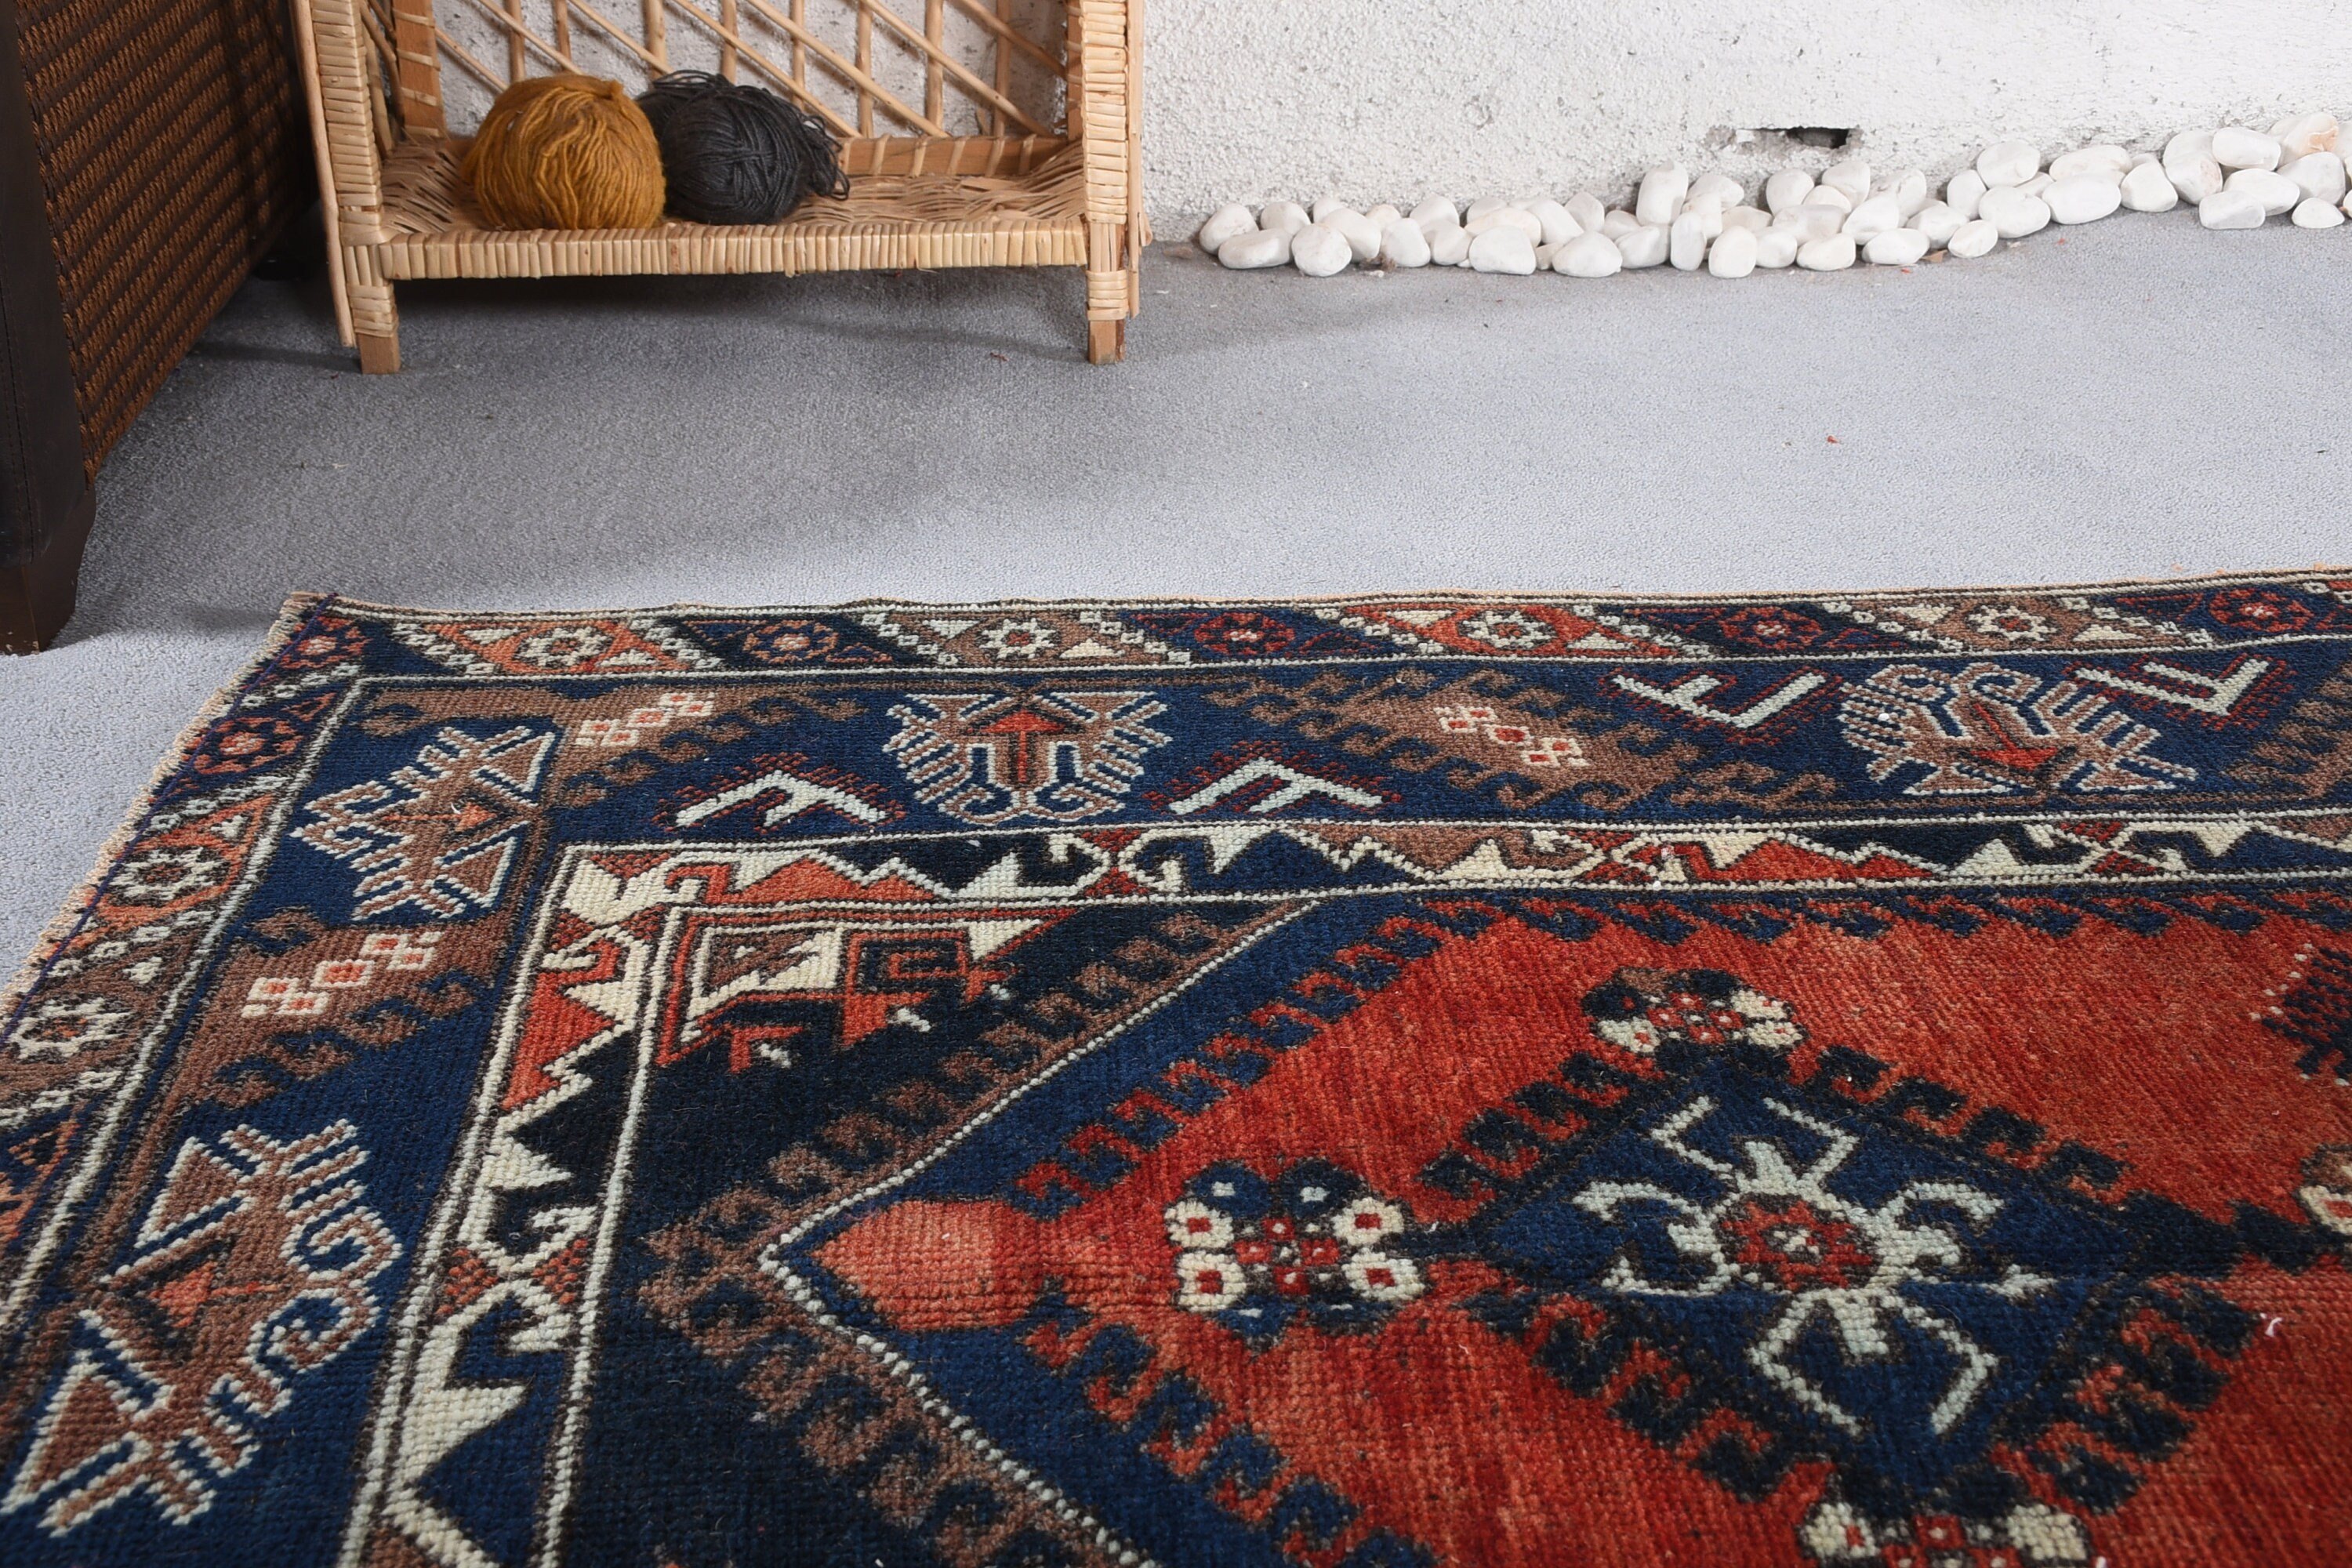 Bedroom Rug, Turkish Rugs, Nursery Rugs, Natural Rugs, Blue Home Decor Rugs, 4.1x6.5 ft Area Rugs, Living Room Rug, Vintage Rug, Floor Rug